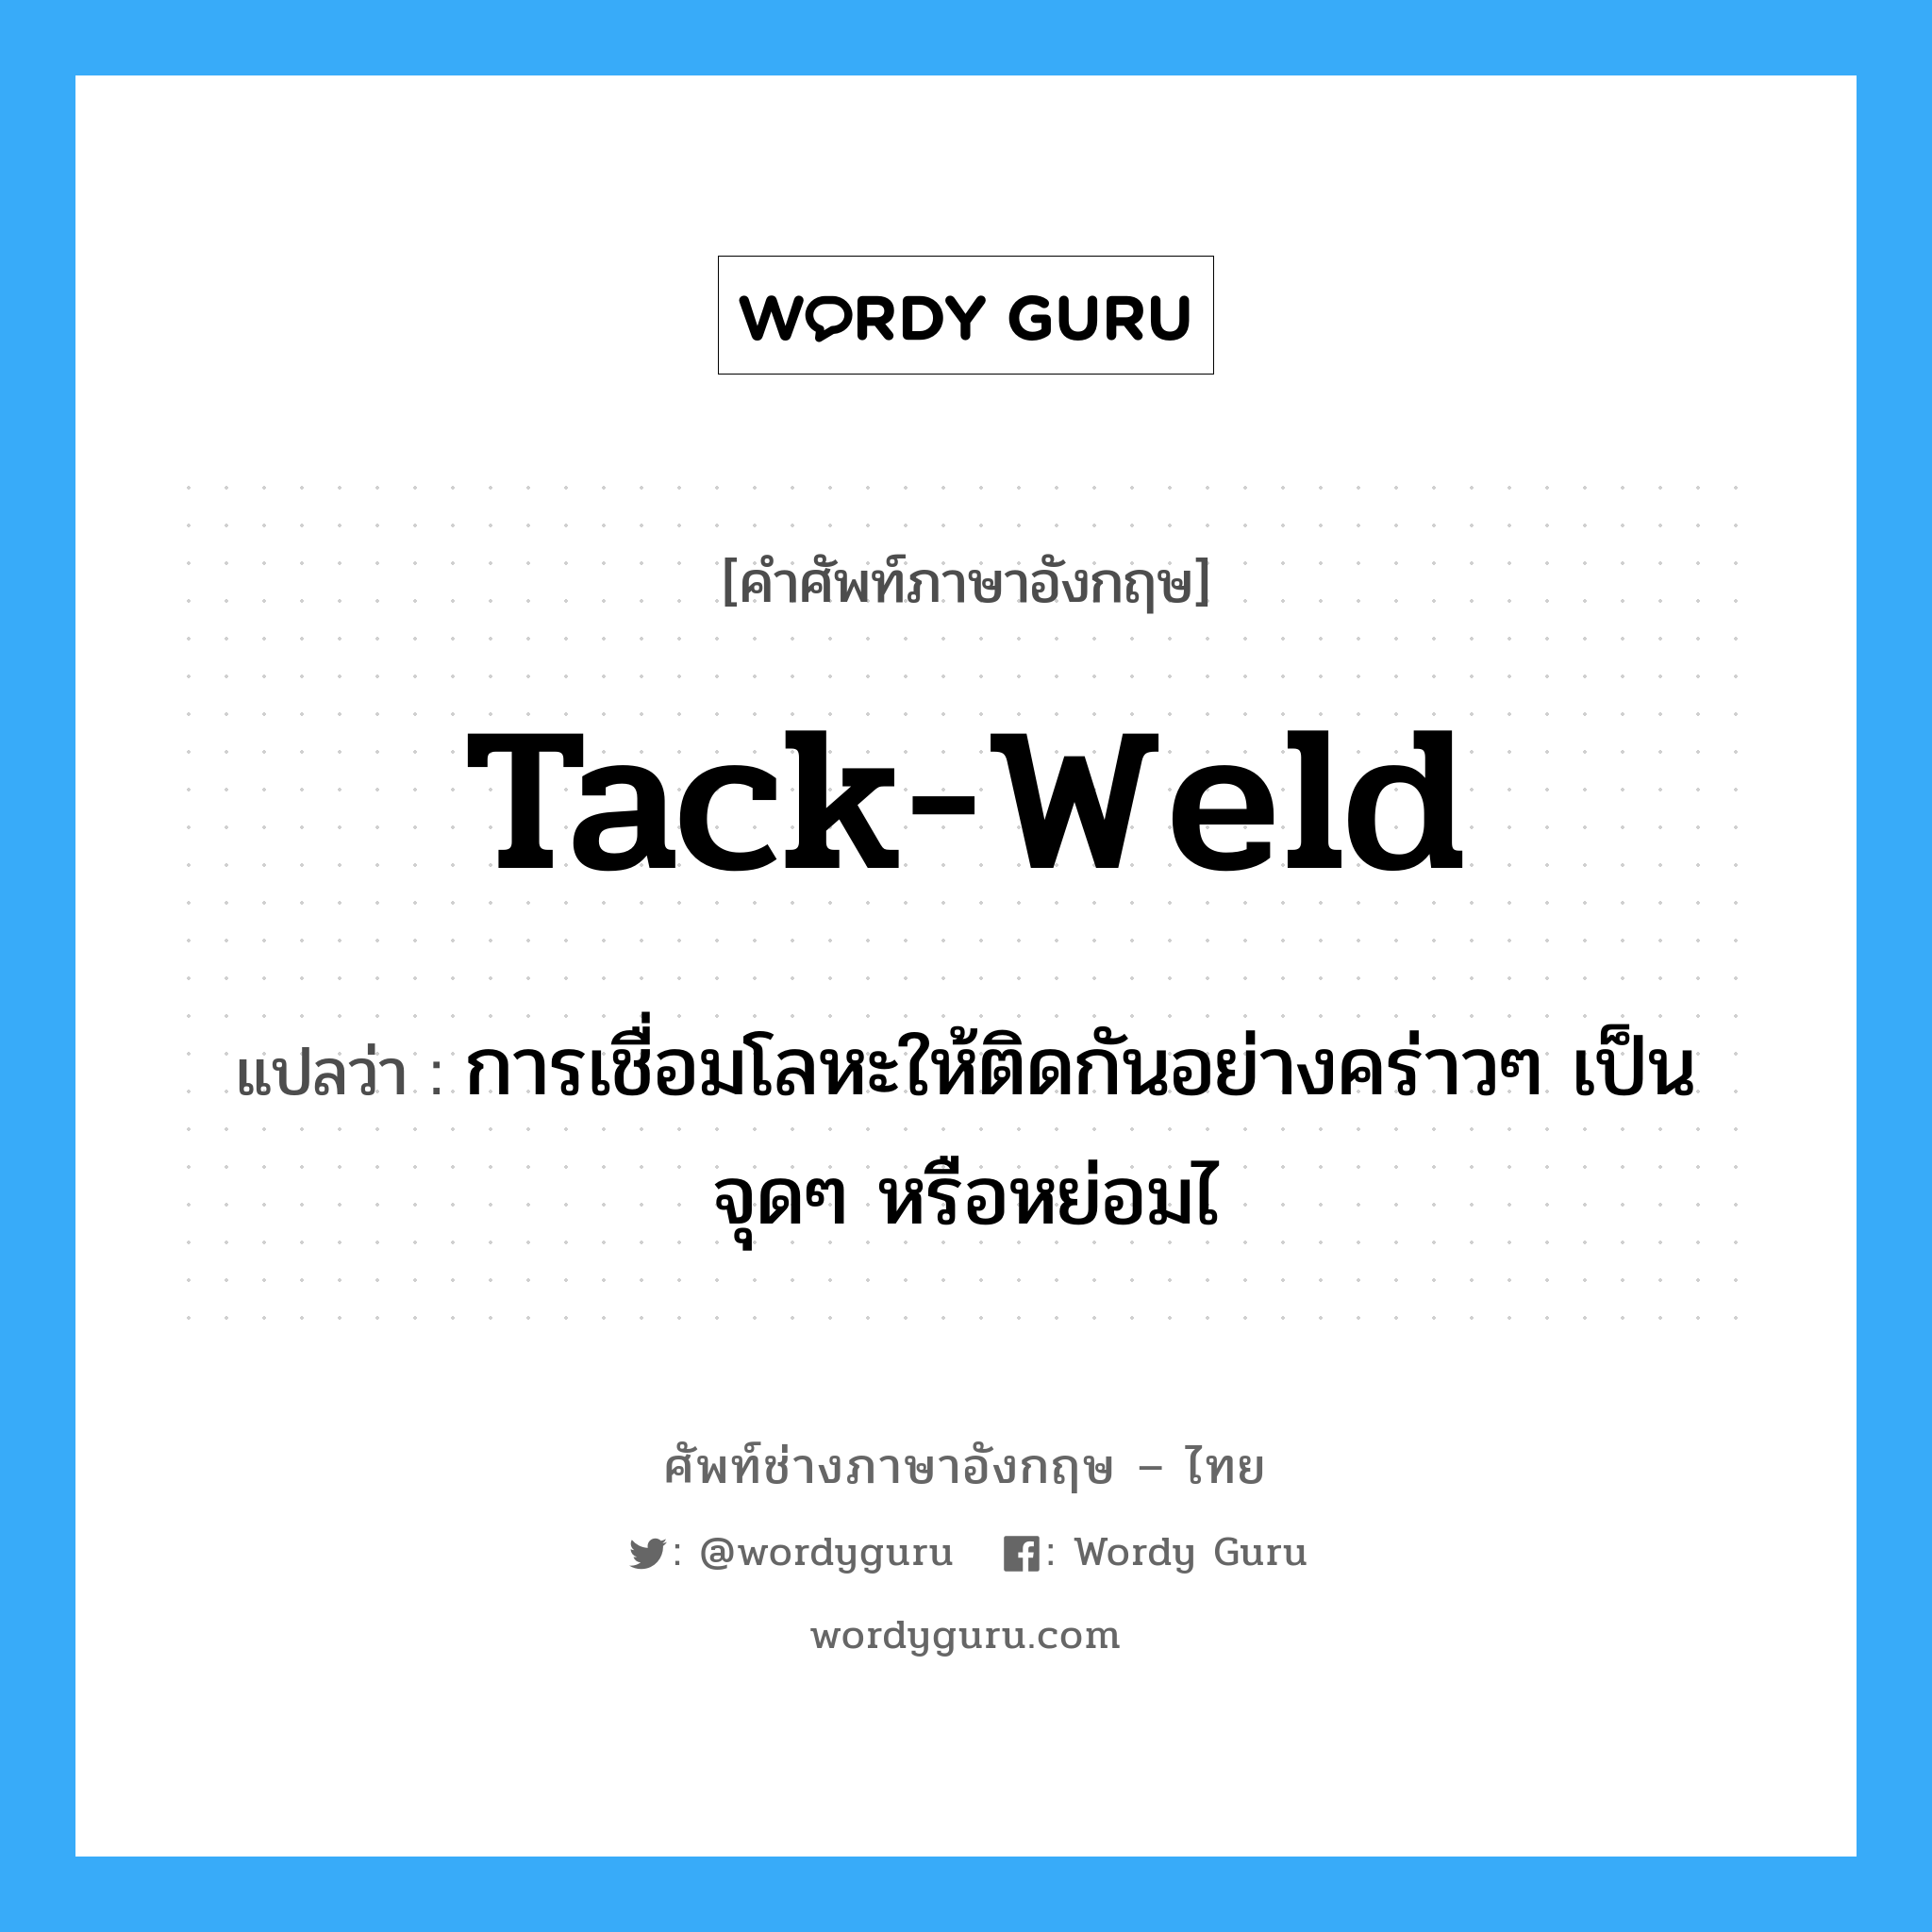 tack-weld แปลว่า?, คำศัพท์ช่างภาษาอังกฤษ - ไทย tack-weld คำศัพท์ภาษาอังกฤษ tack-weld แปลว่า การเชื่อมโลหะให้ติดกันอย่างคร่าวๆ เป็นจุดๆ หรือหย่อมไ